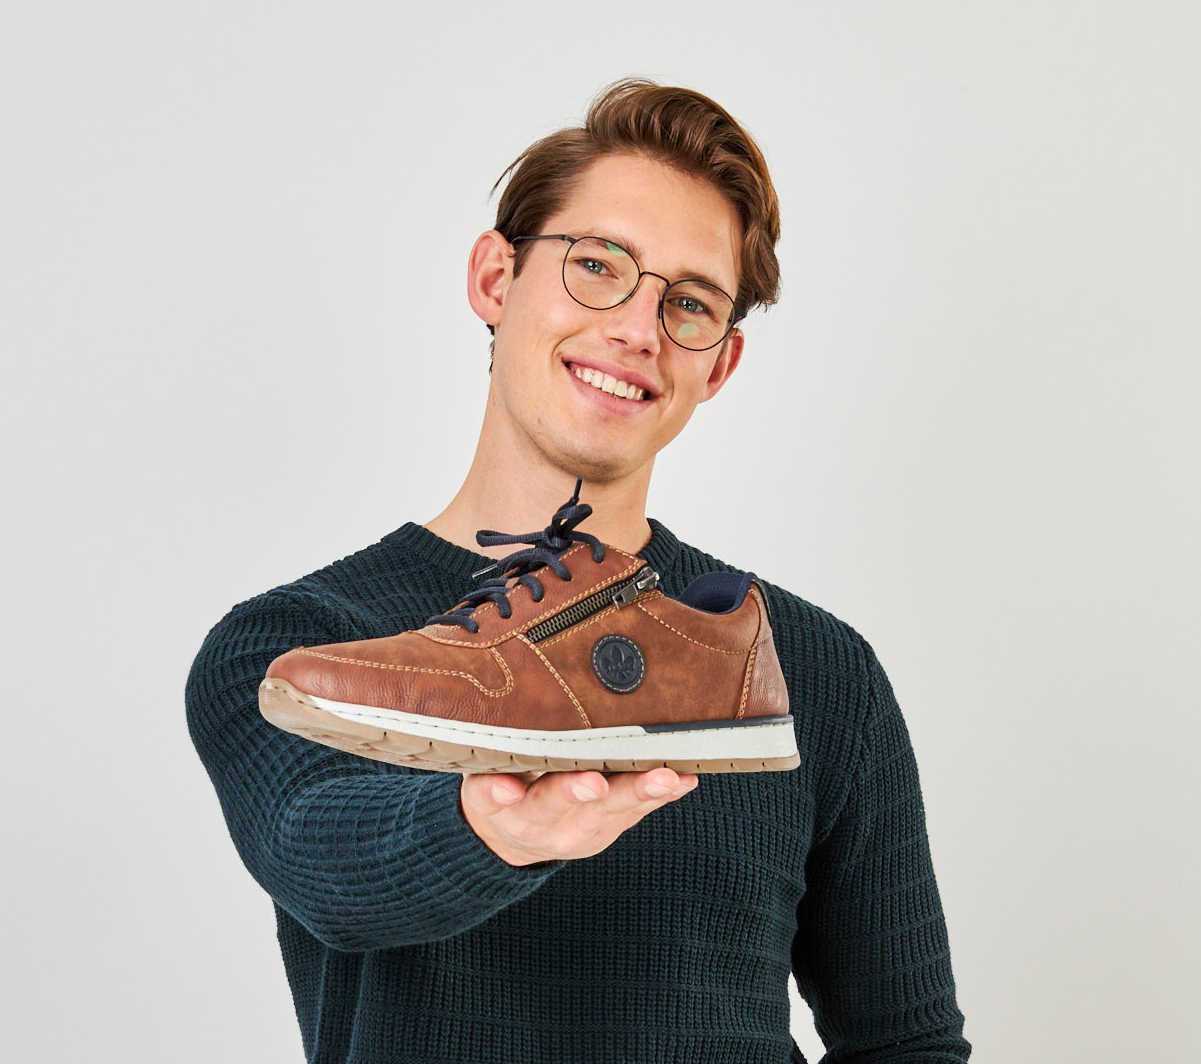 Ein lächelnder junger Mann hält einen braunen Schuh ins Bild